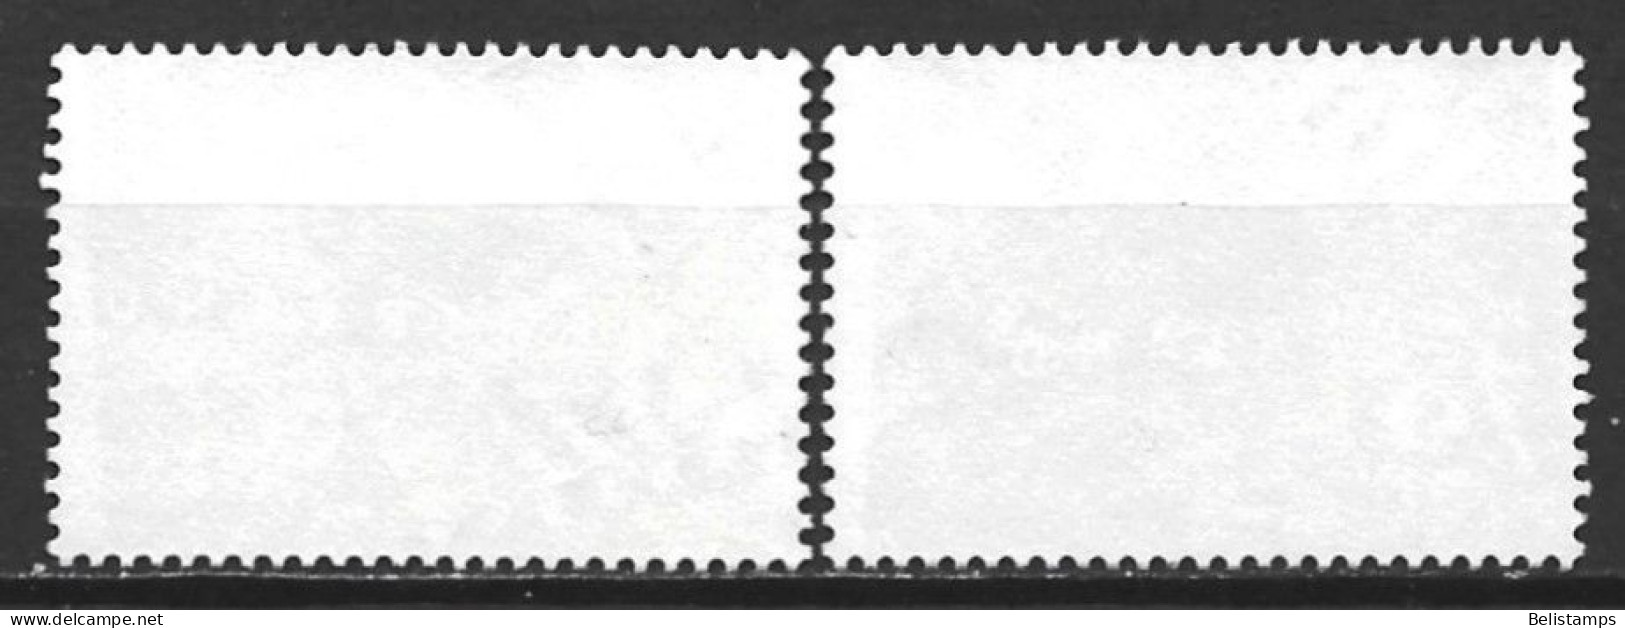 Netherlands 1993. Scott #823-4 (U) Greetings Stamps  *Complete Set* - Oblitérés